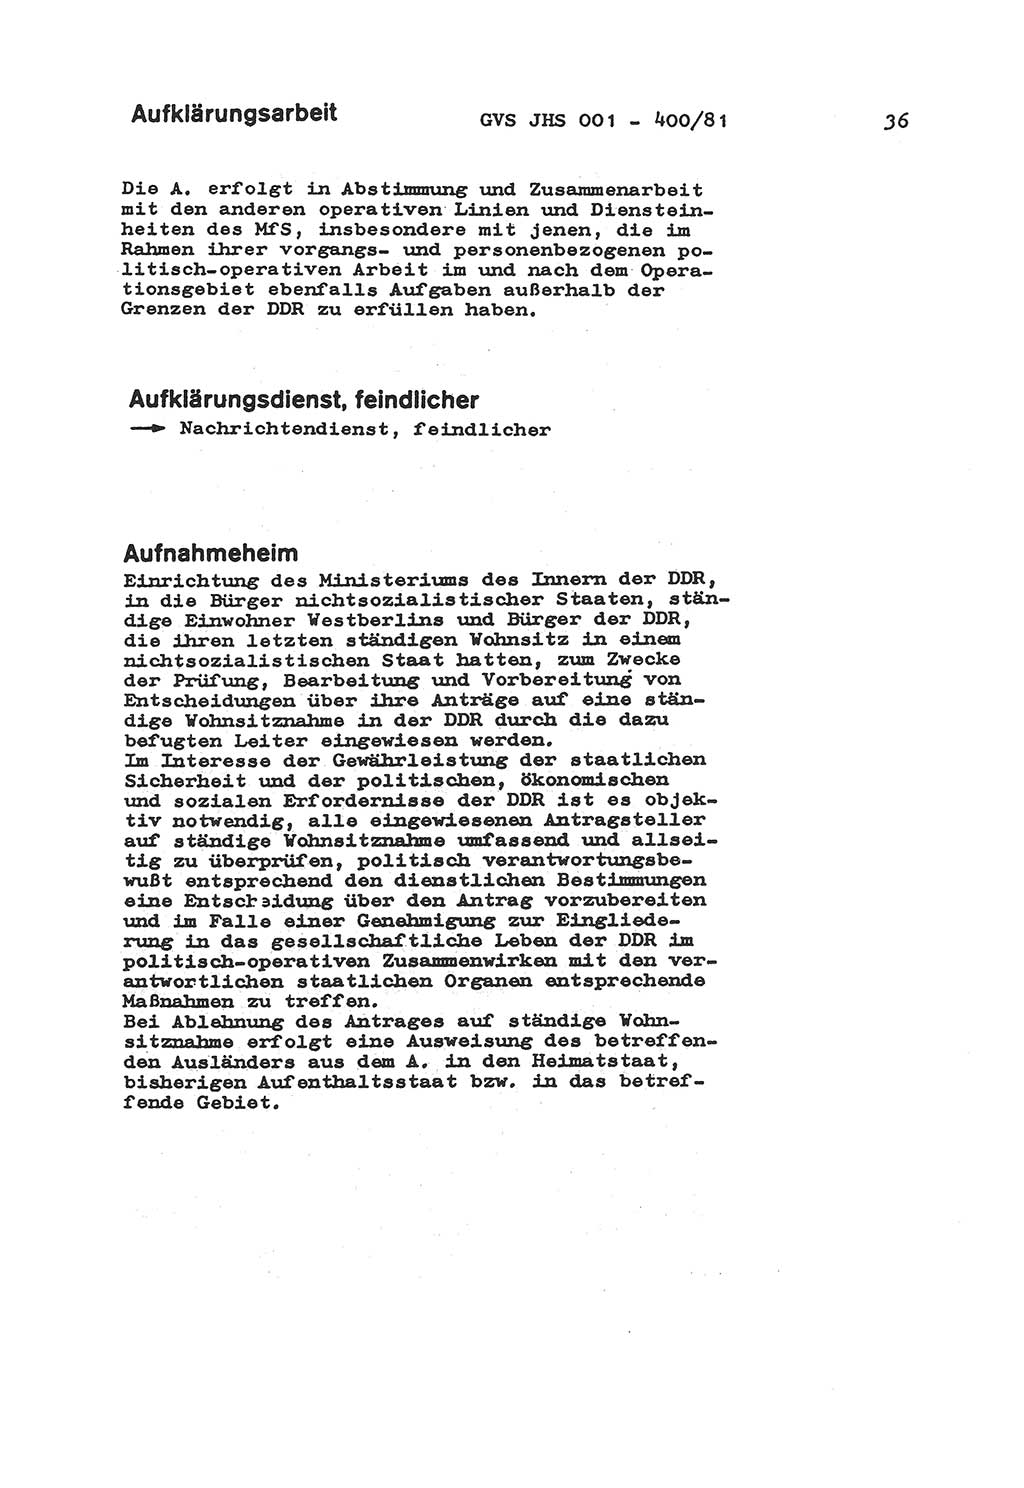 Wörterbuch der politisch-operativen Arbeit, Ministerium für Staatssicherheit (MfS) [Deutsche Demokratische Republik (DDR)], Juristische Hochschule (JHS), Geheime Verschlußsache (GVS) o001-400/81, Potsdam 1985, Blatt 36 (Wb. pol.-op. Arb. MfS DDR JHS GVS o001-400/81 1985, Bl. 36)